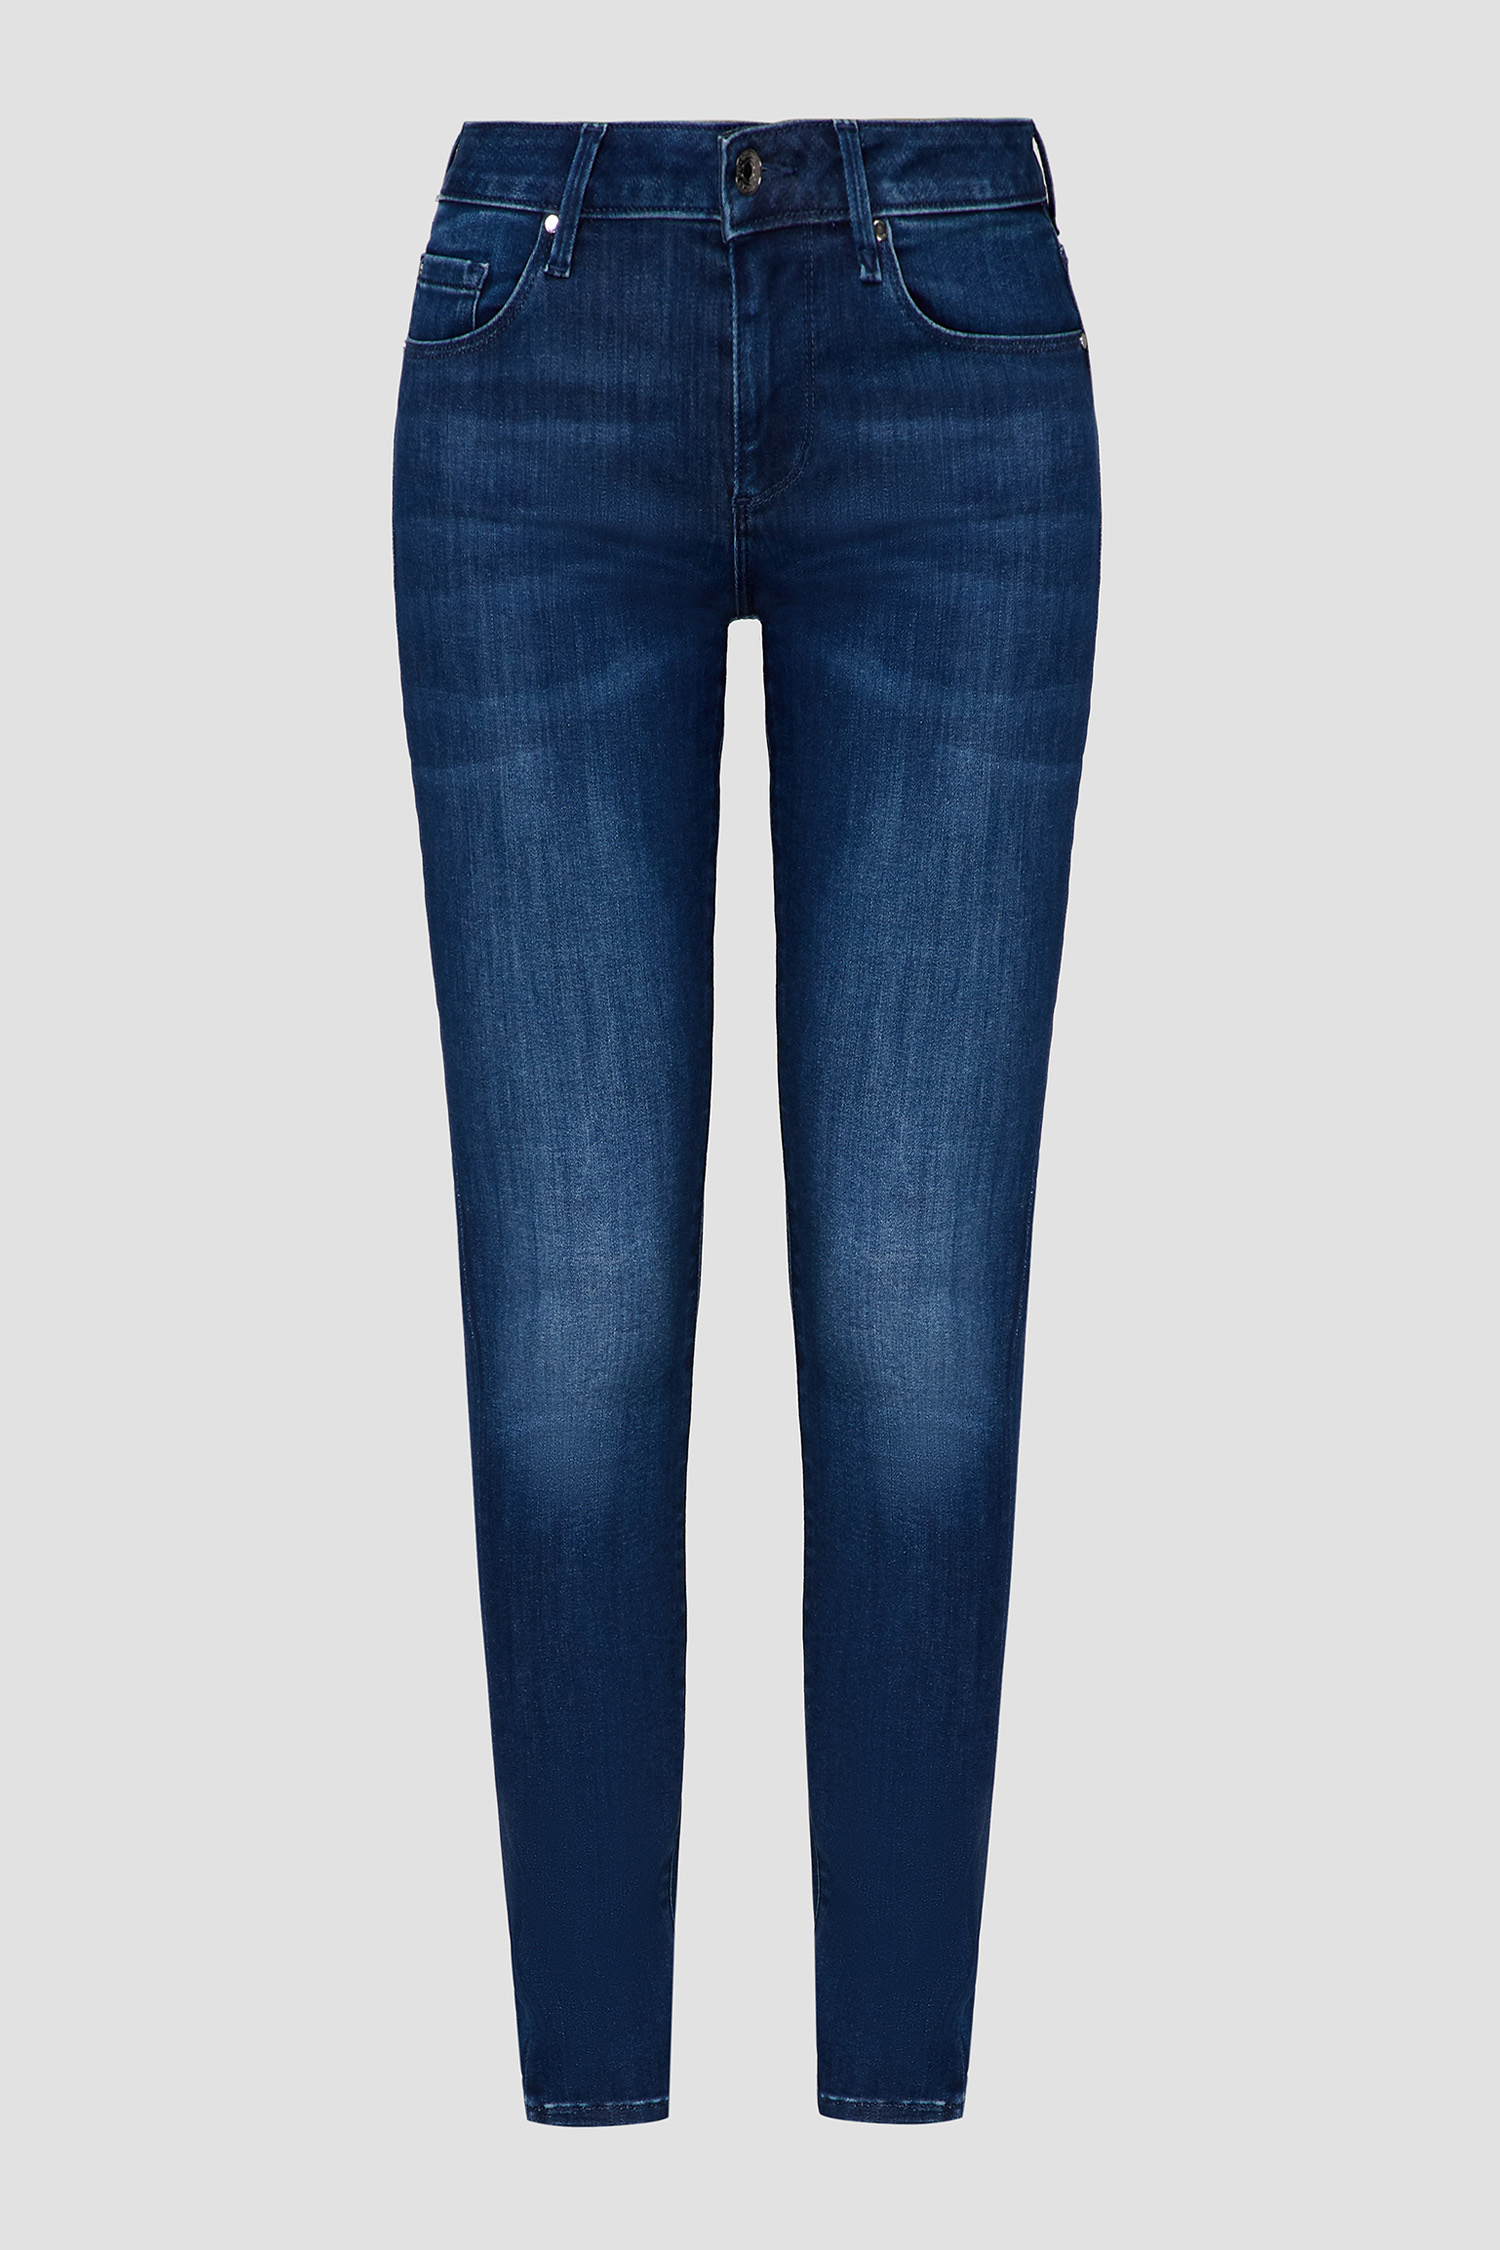 Темно-синие джинсы Annette Pinces Power для девушек Guess W0YA59.D42J1;HSTA